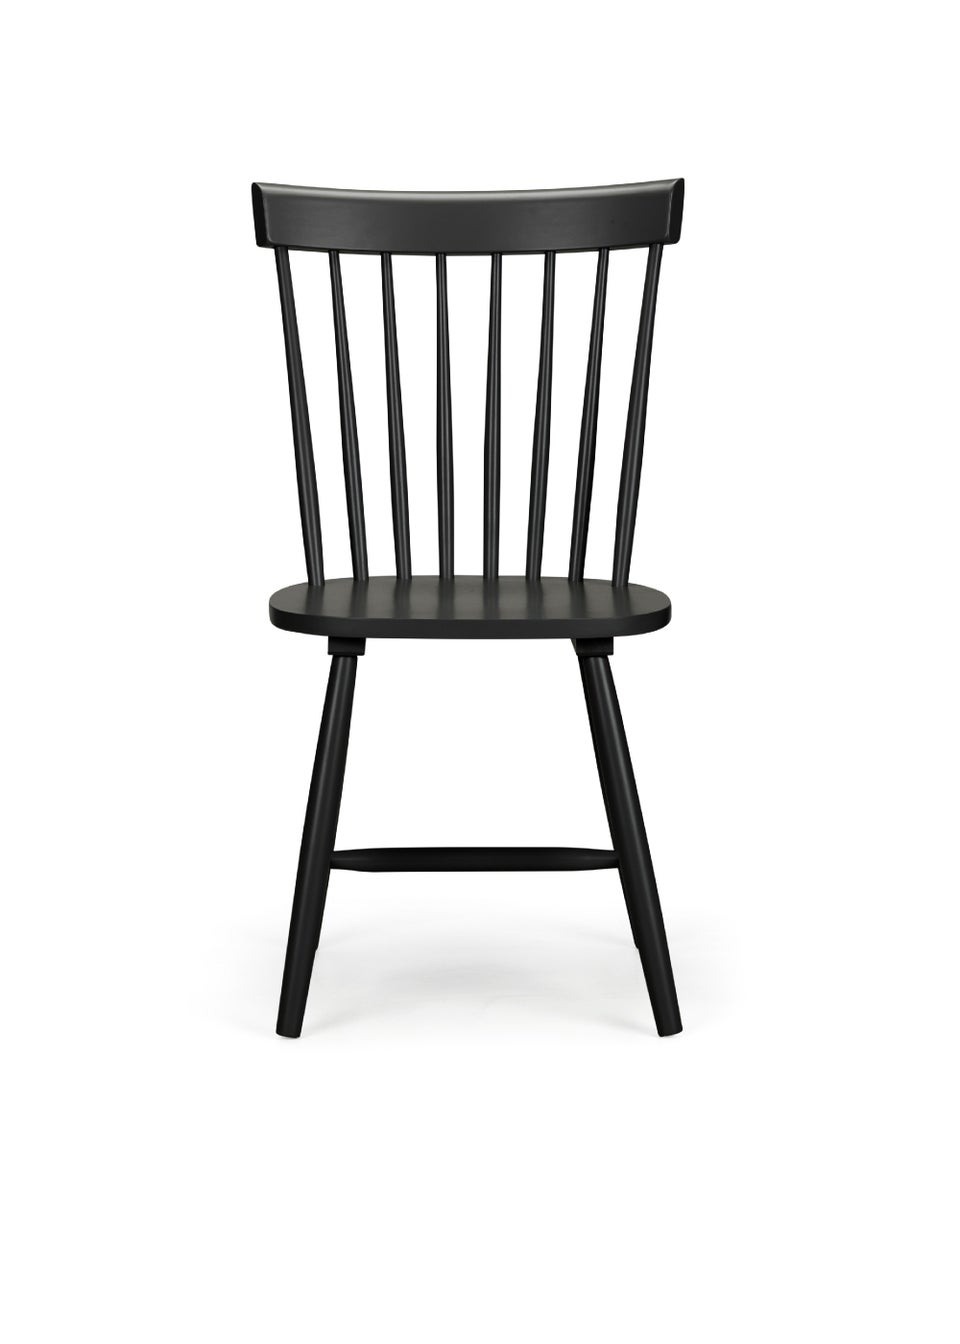 Julian Bowen Set Of 4 Torino Chairs (90 x 52 x 49 cm)